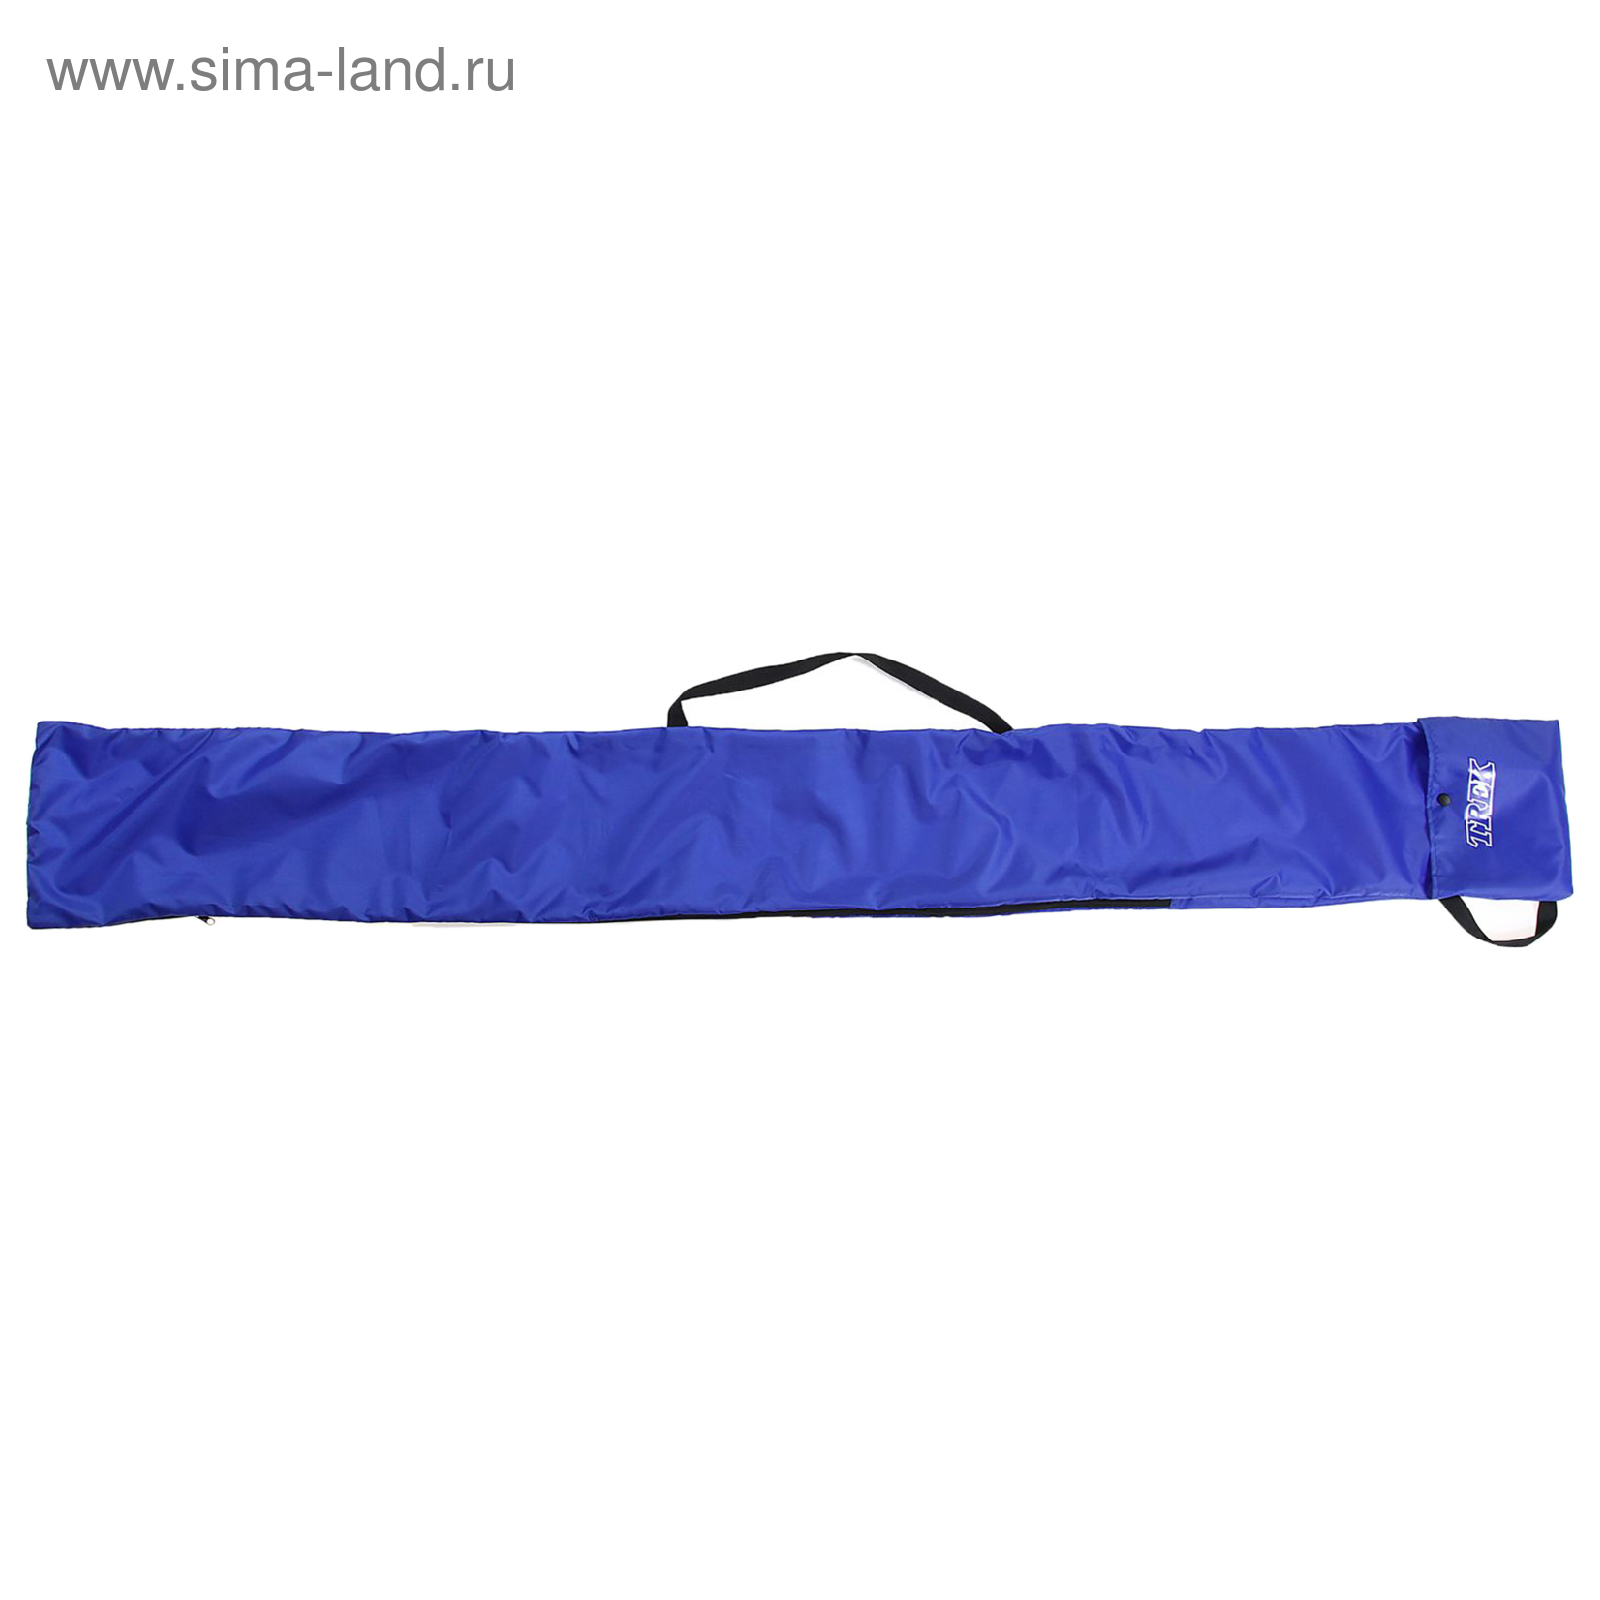 Чехол- сумка для беговых лыж 190см